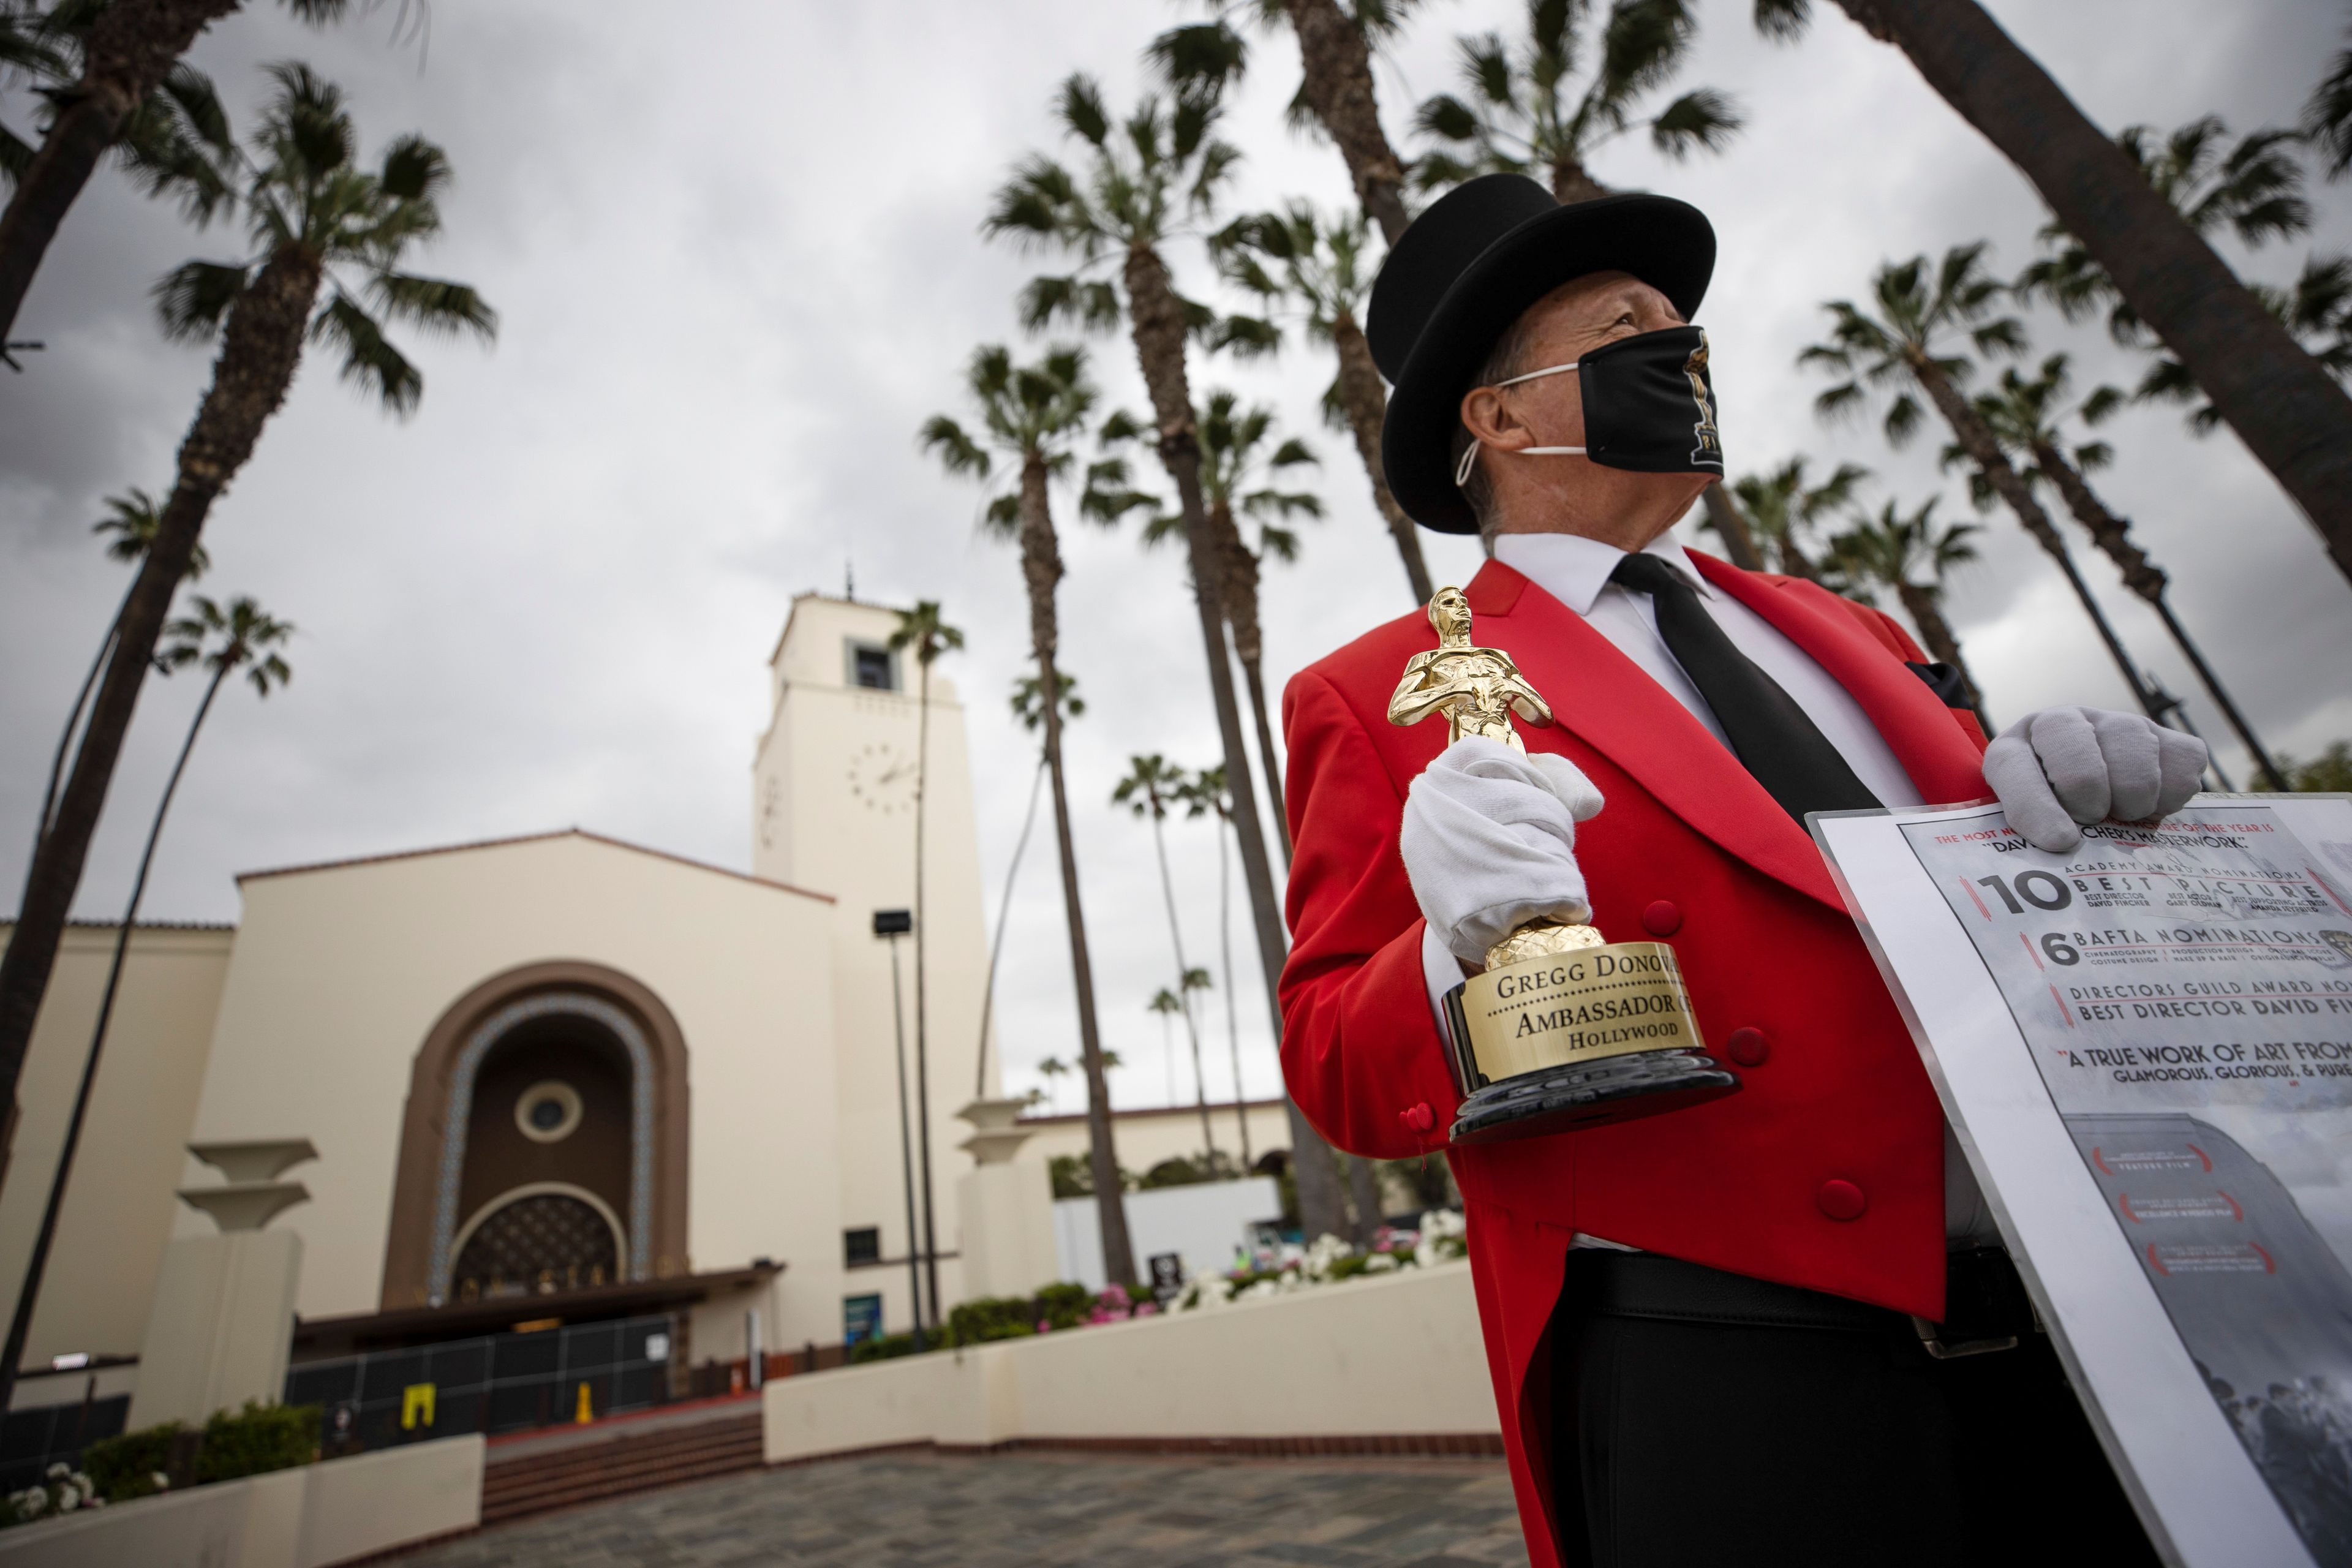 El autoproclamado embajador de Hollywood, Gregg Donovan, sostiene una réplica de la estatuilla de los Oscar frente a Union Station durante los preparativos para la 93.ª edición de los Premios de la Academia en Los Ángeles.